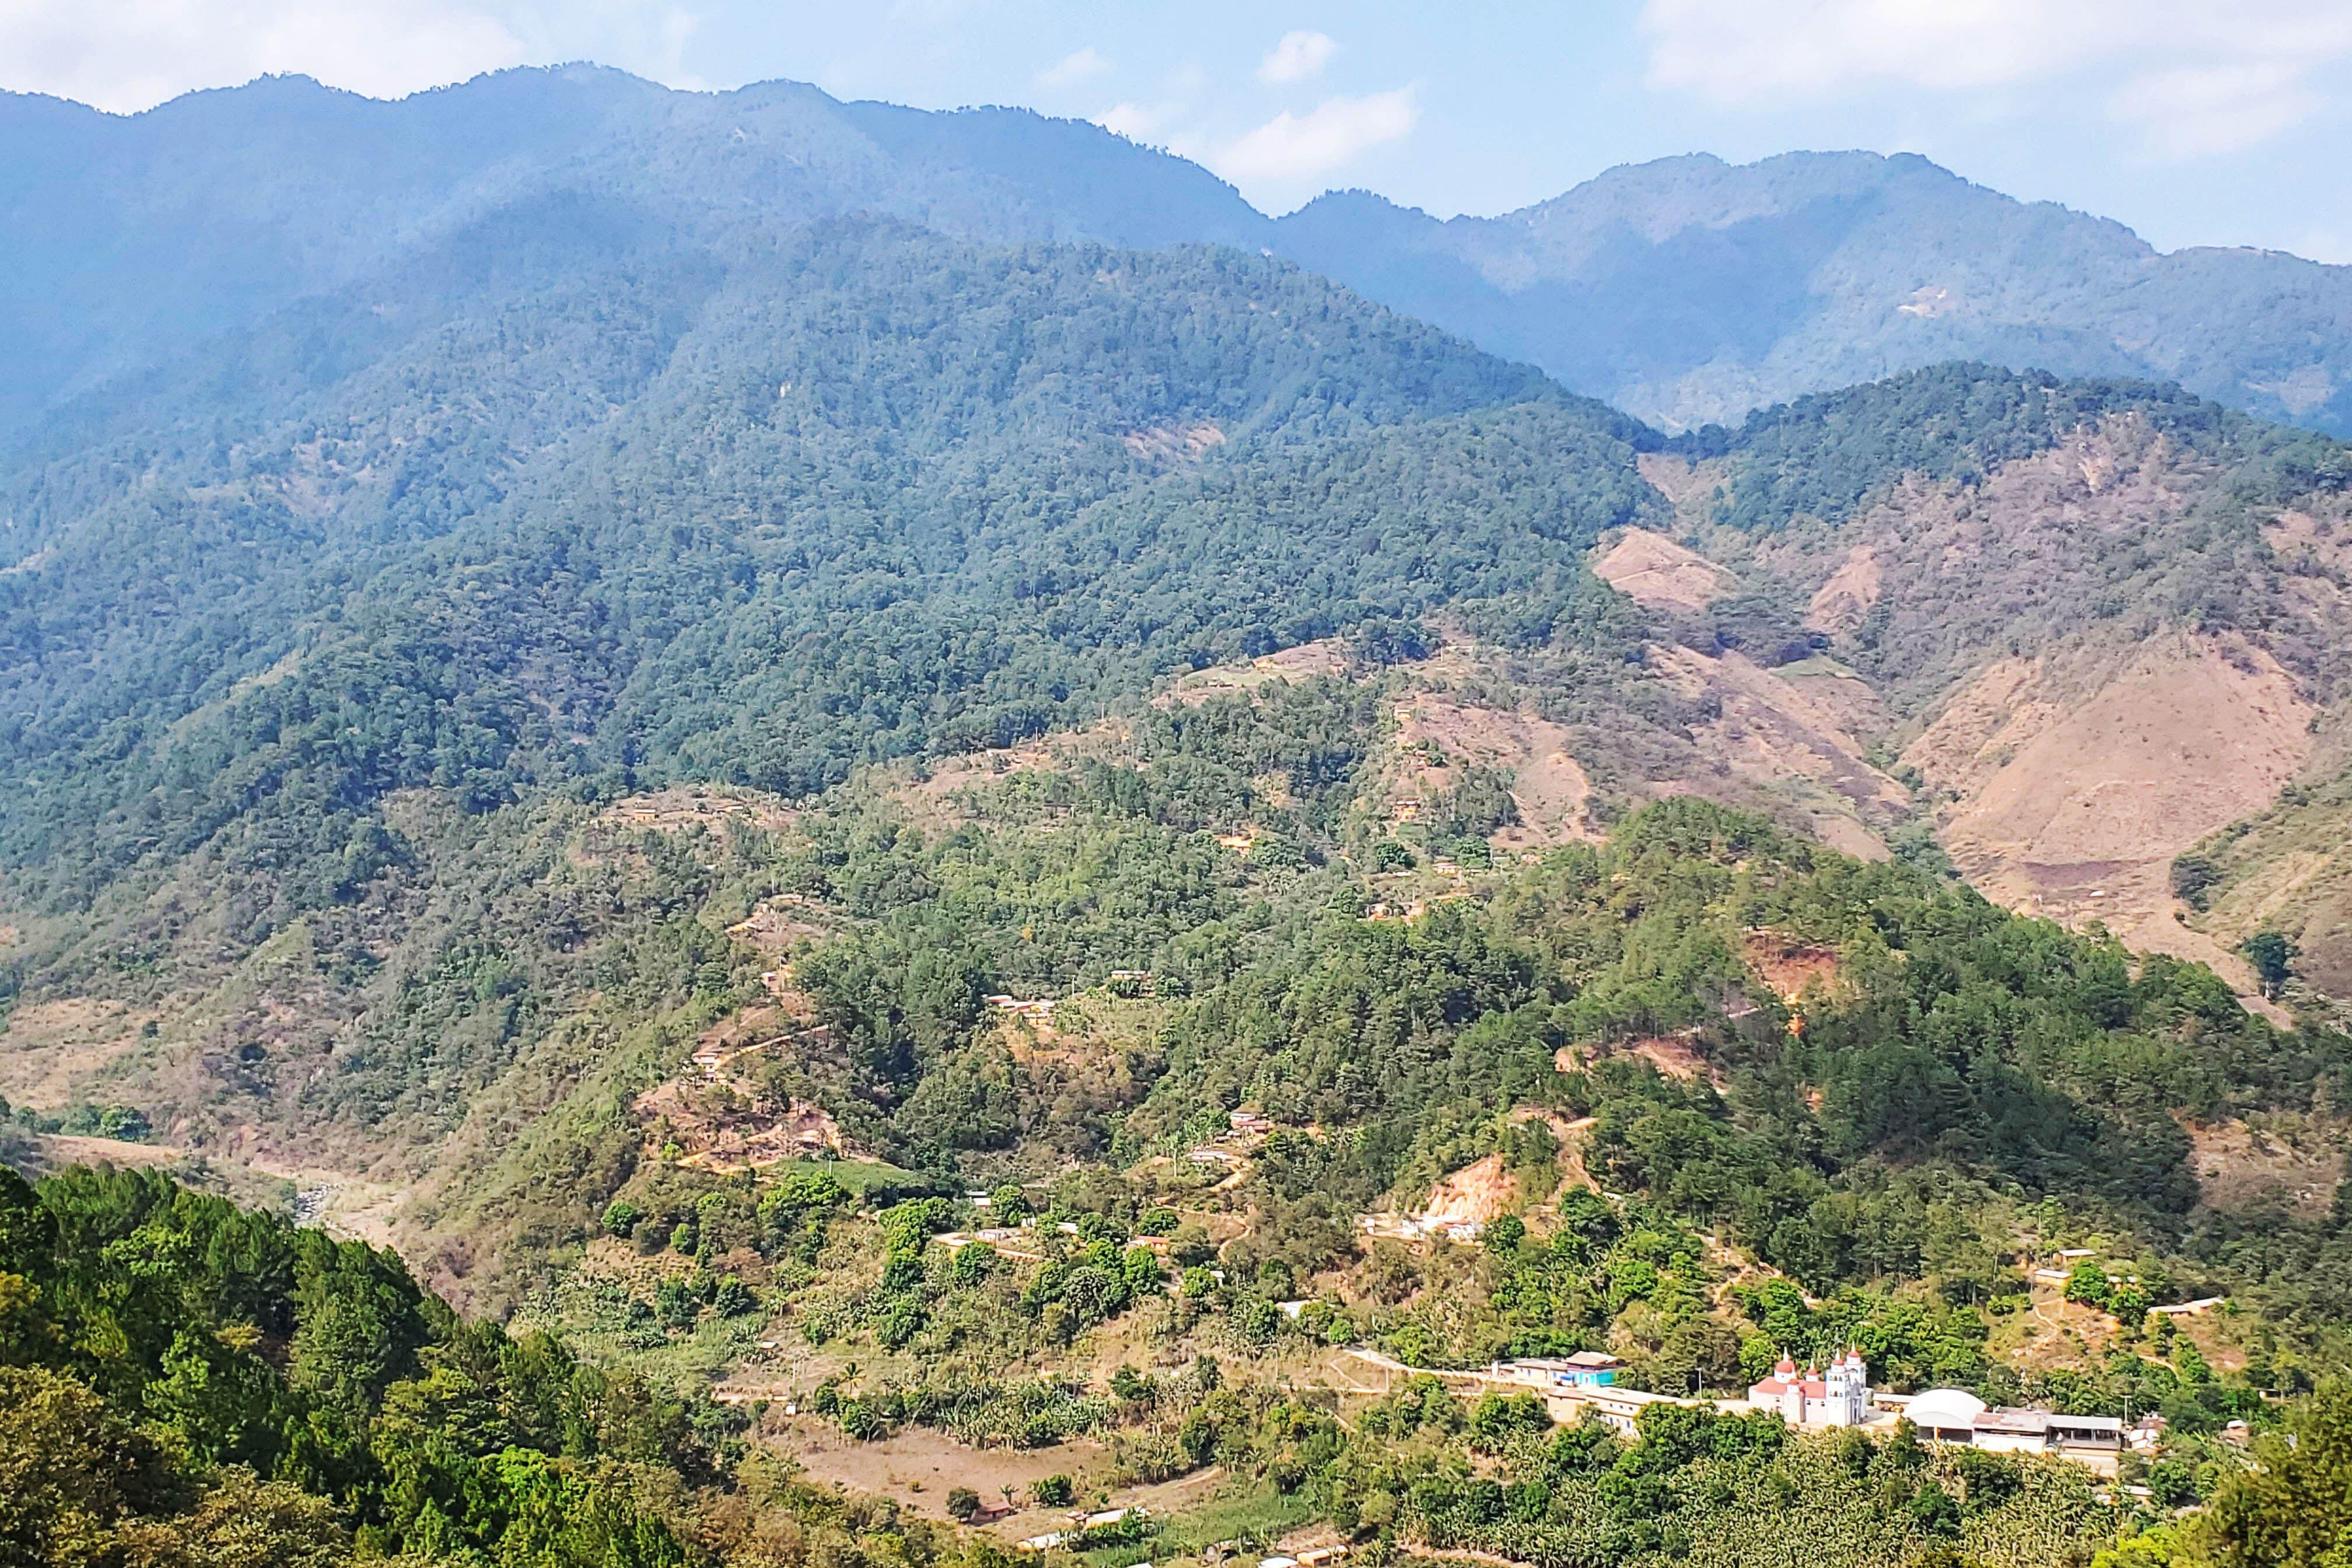 La comunidad de Itia Zuti, abajo a la derecha en la imagen, está enclavada en medio de las majestuosas montañas de Guerrero. (MARCOS GONZÁLEZ / BBC).